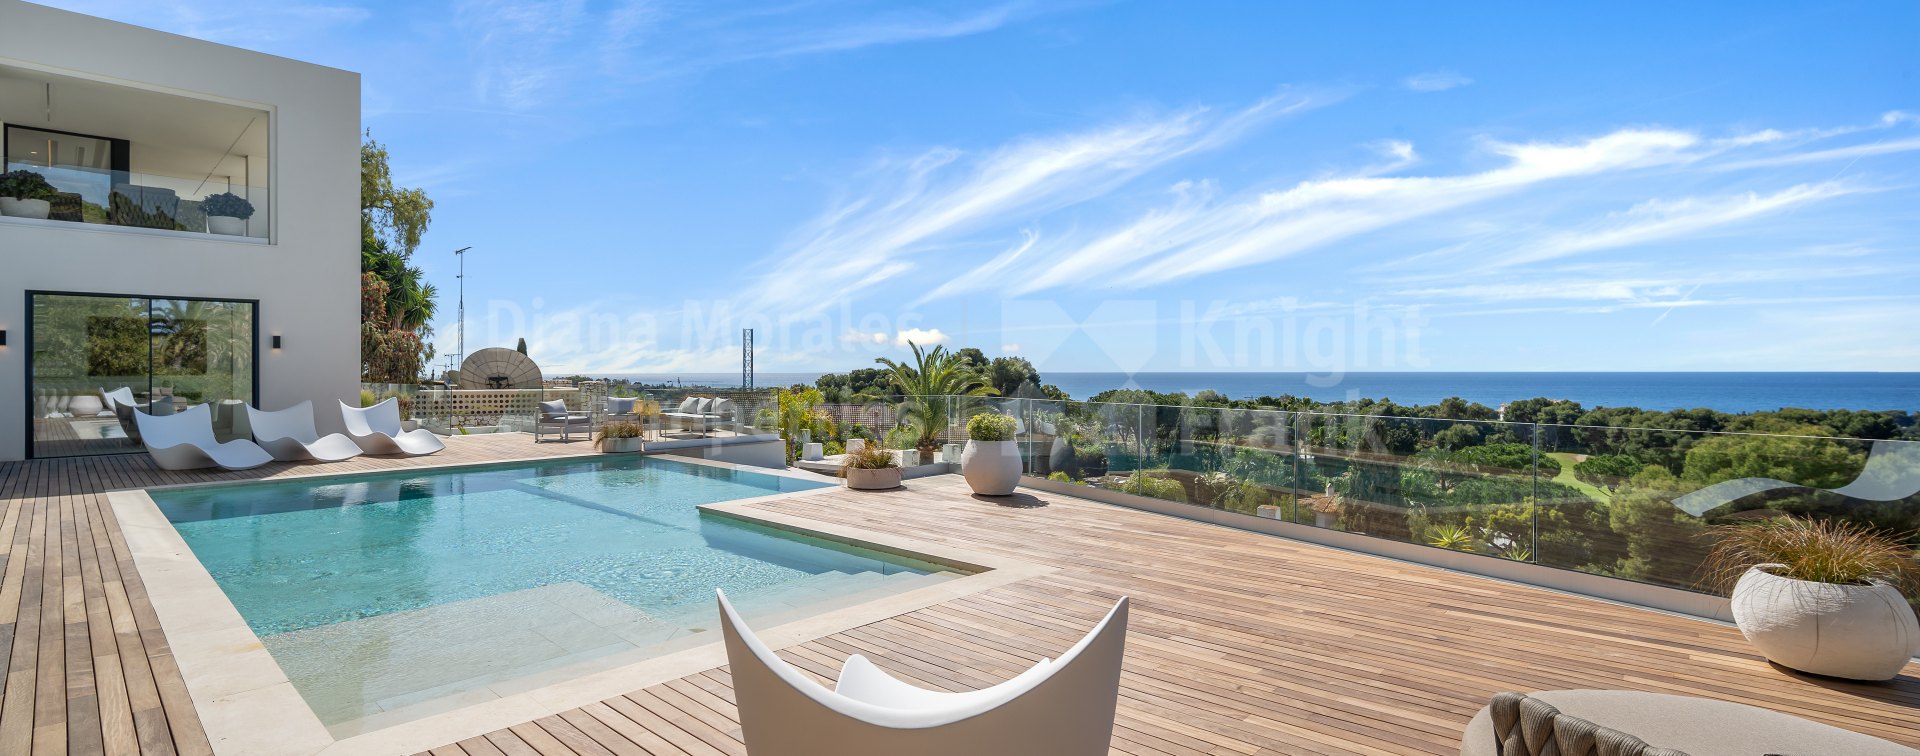 Rio Real, Villa con piscina desbordante y vistas panorámicas